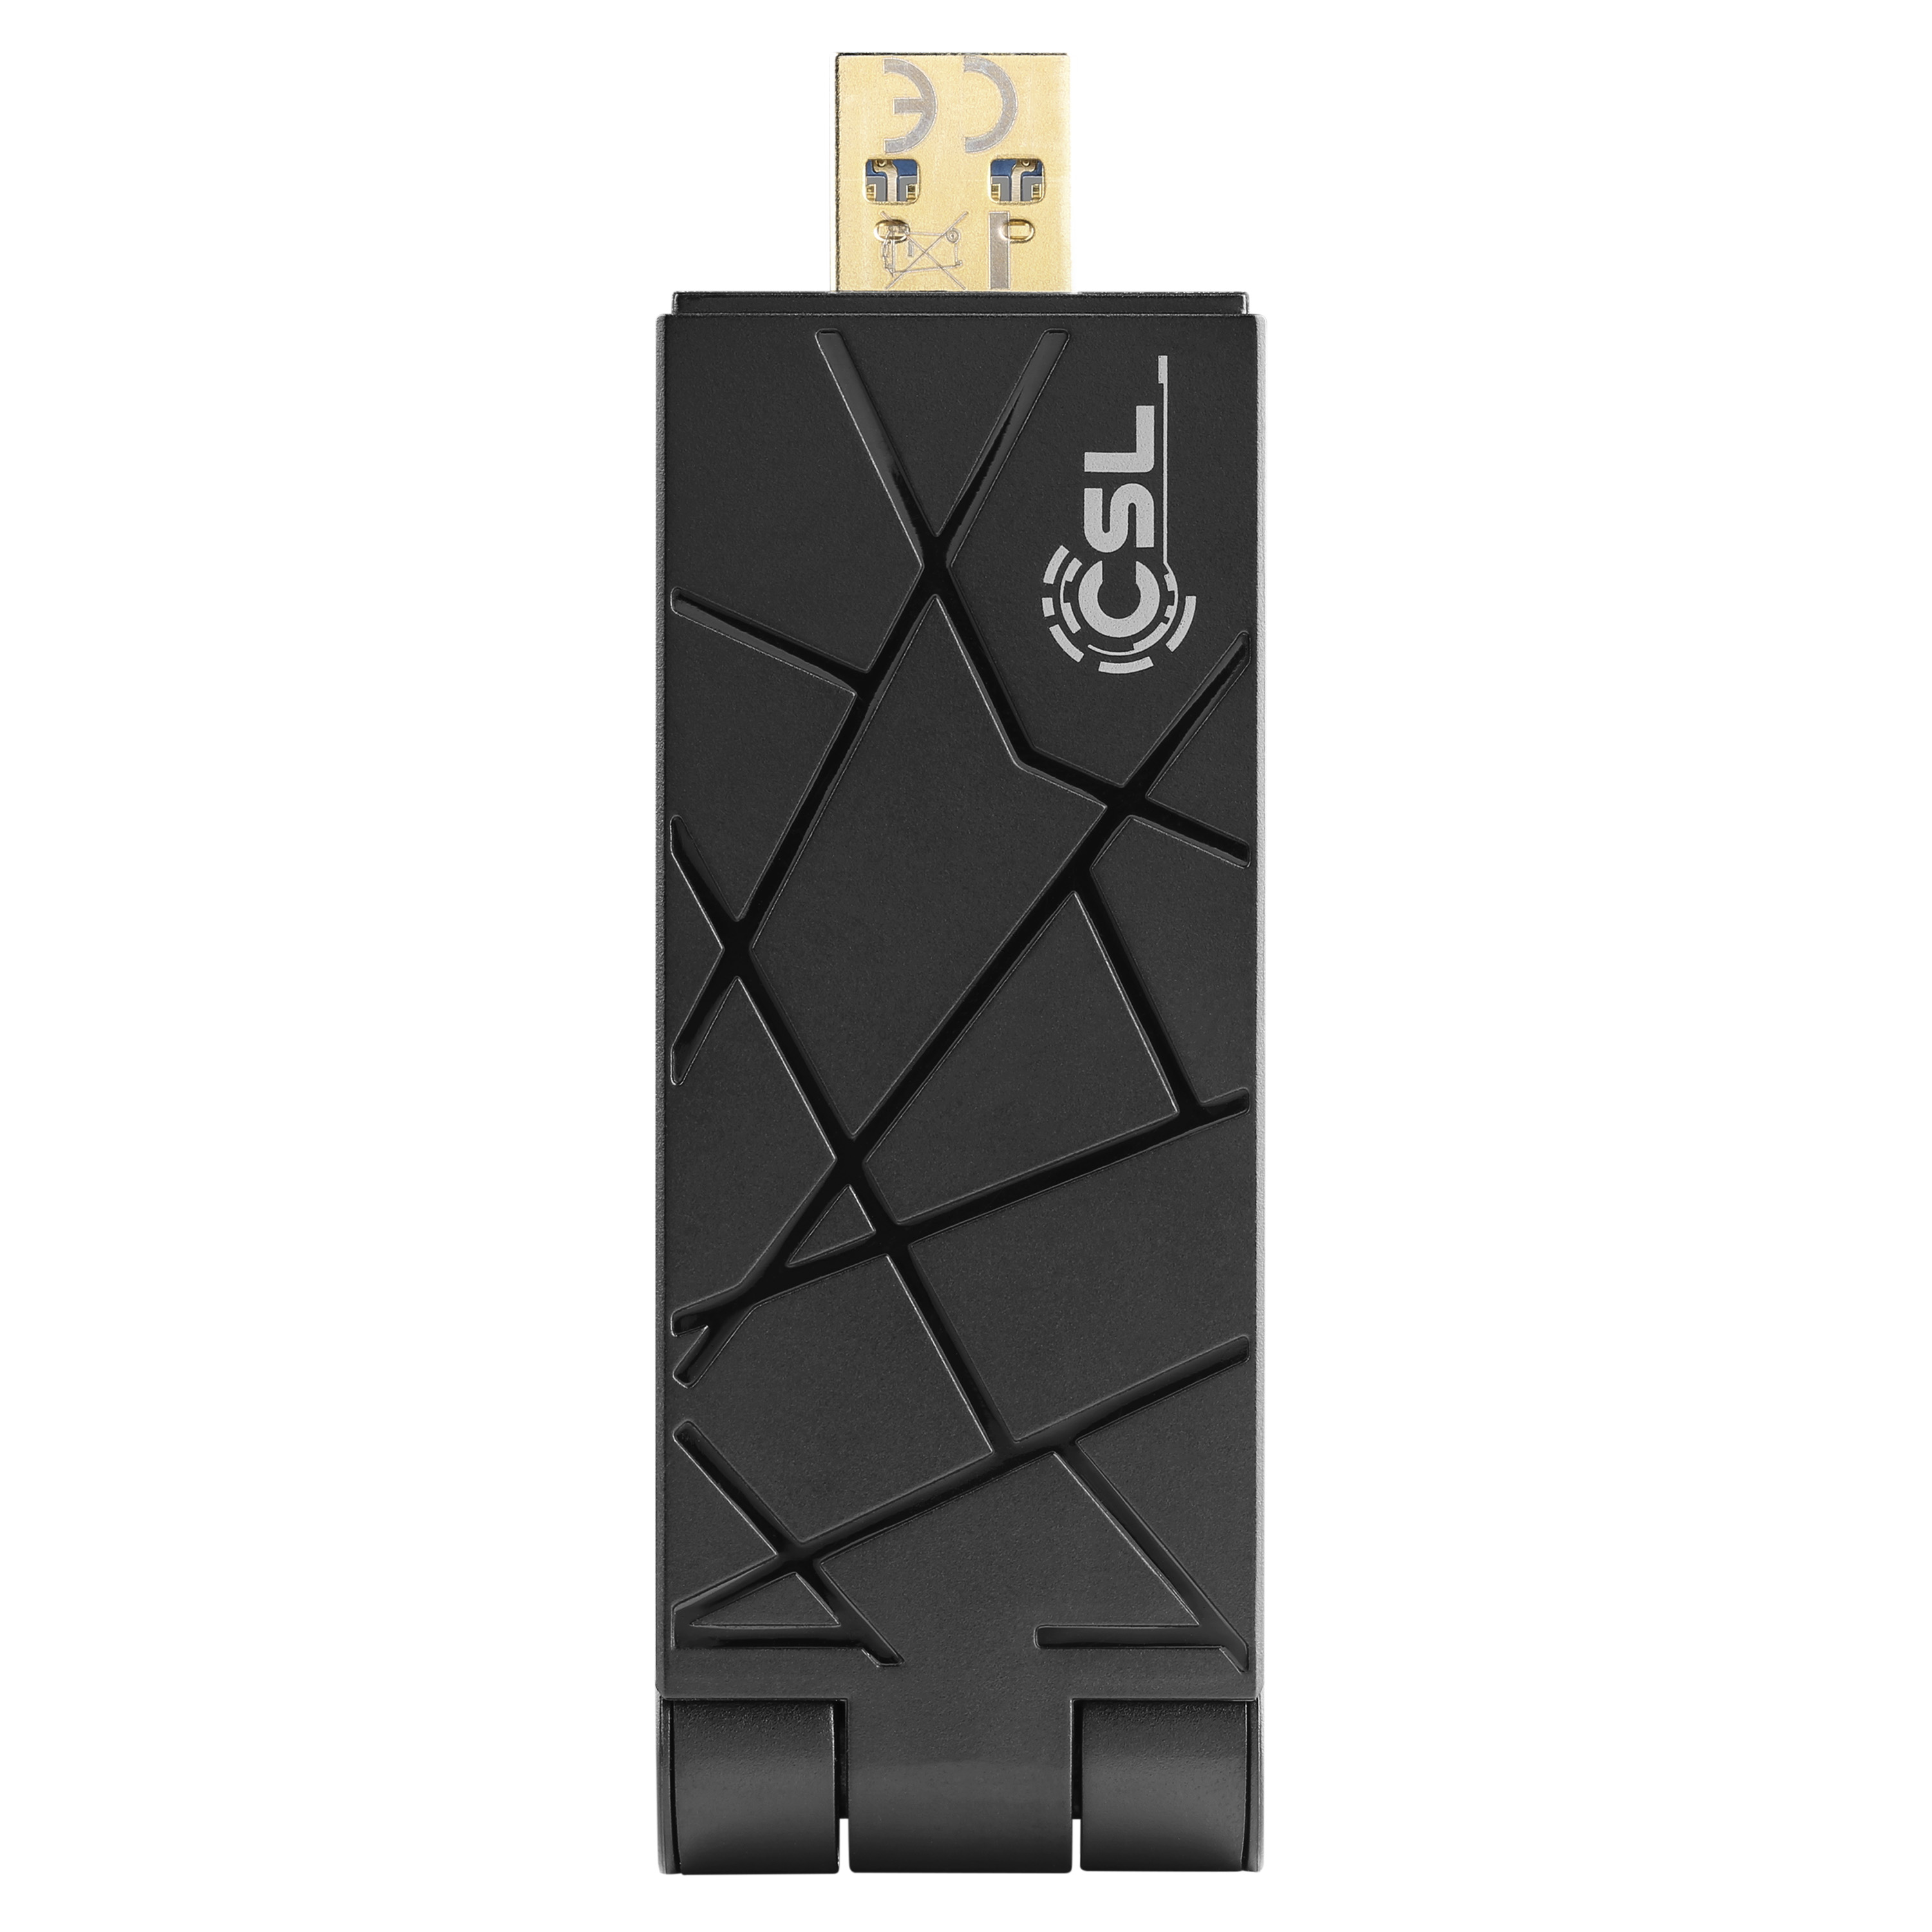 CSL AX1800 USB Adapter WLAN